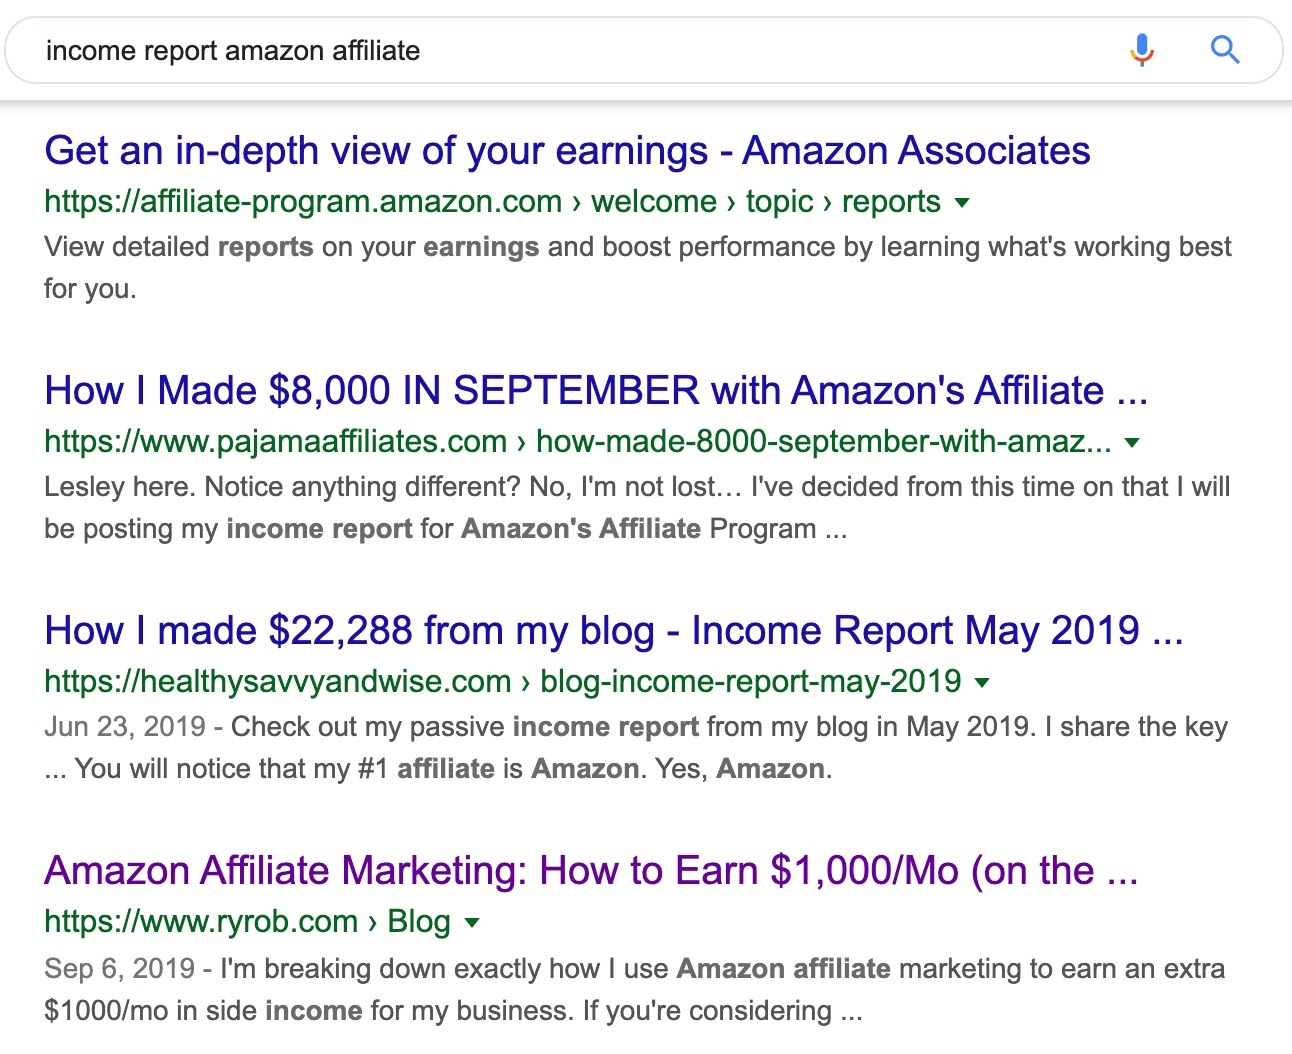 income report amazon affiliate Google Search